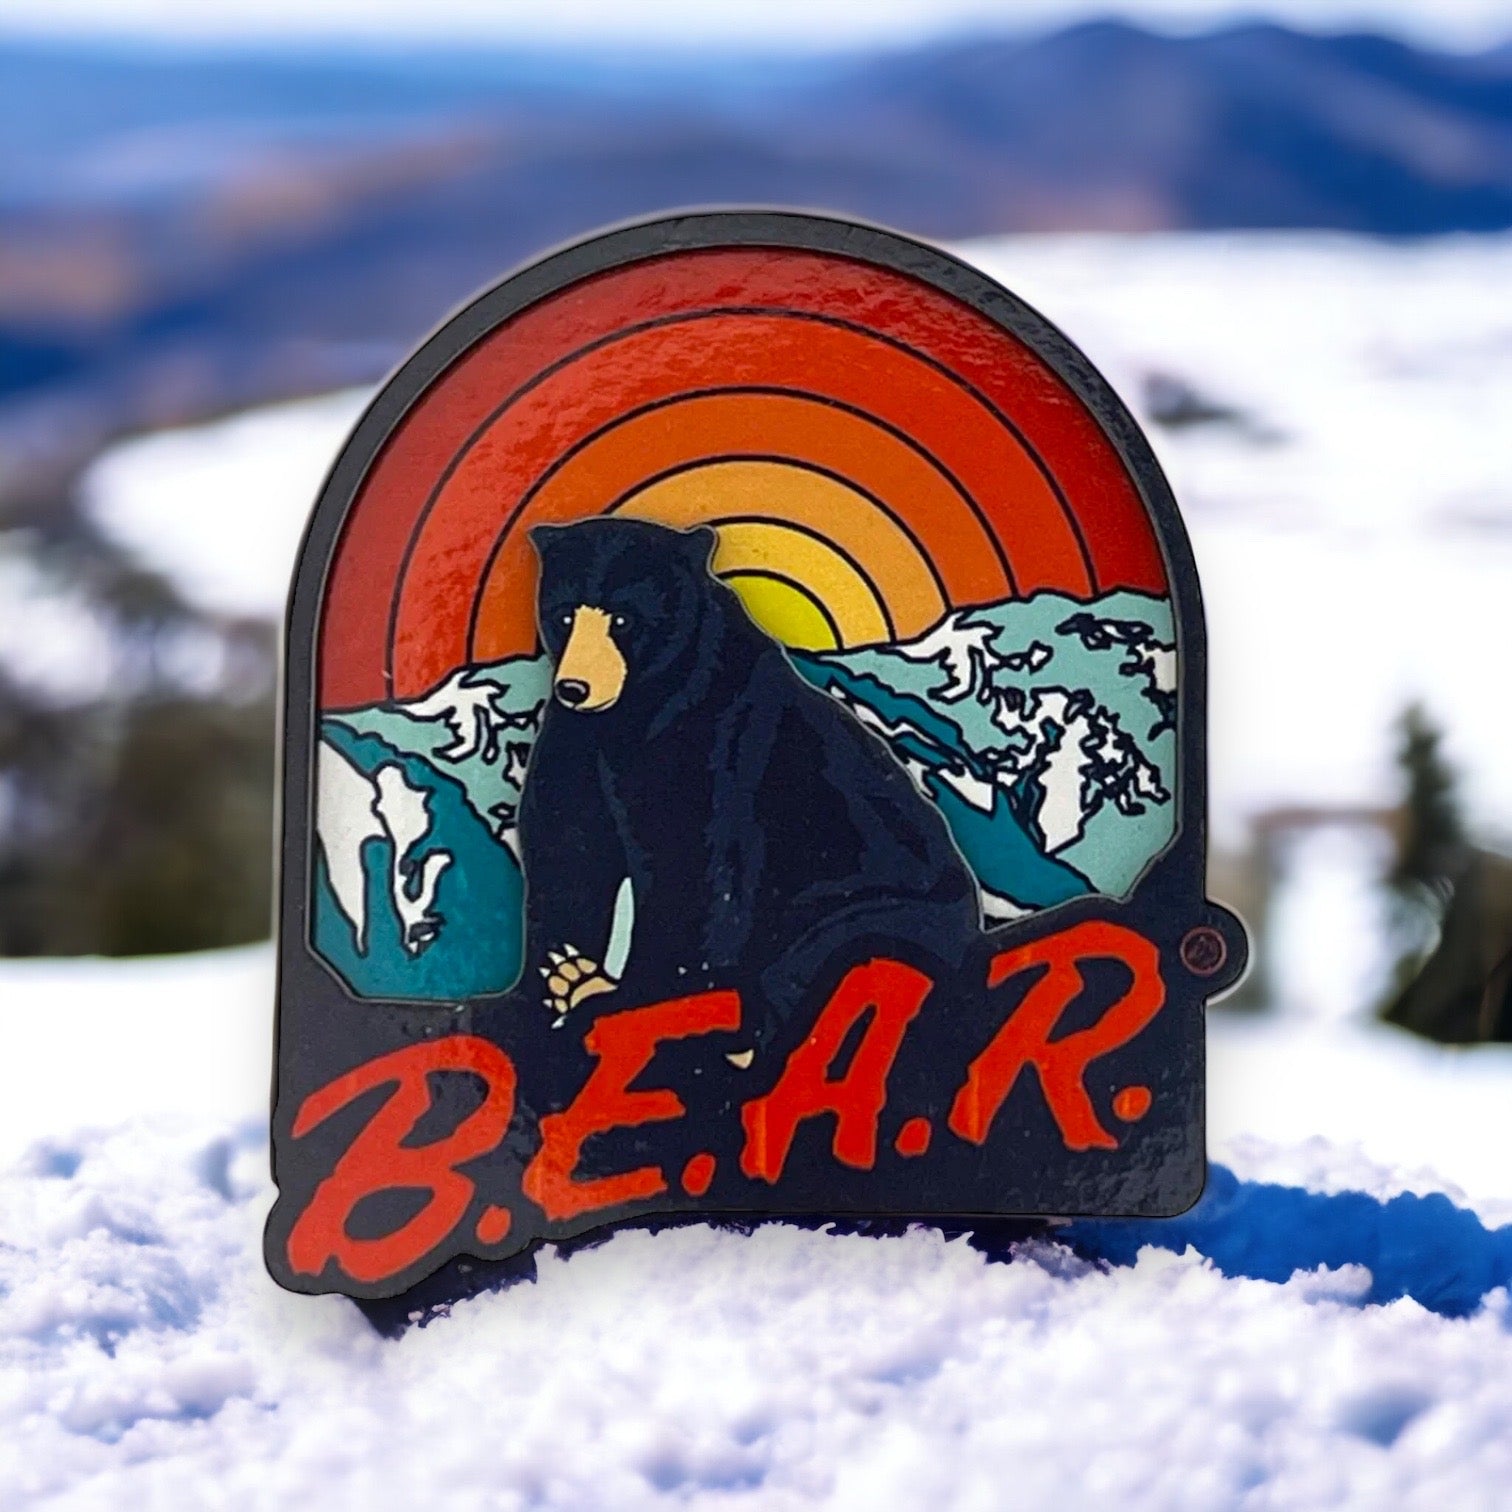 Rainbow and a black bear with text overlap B.E.A.R.